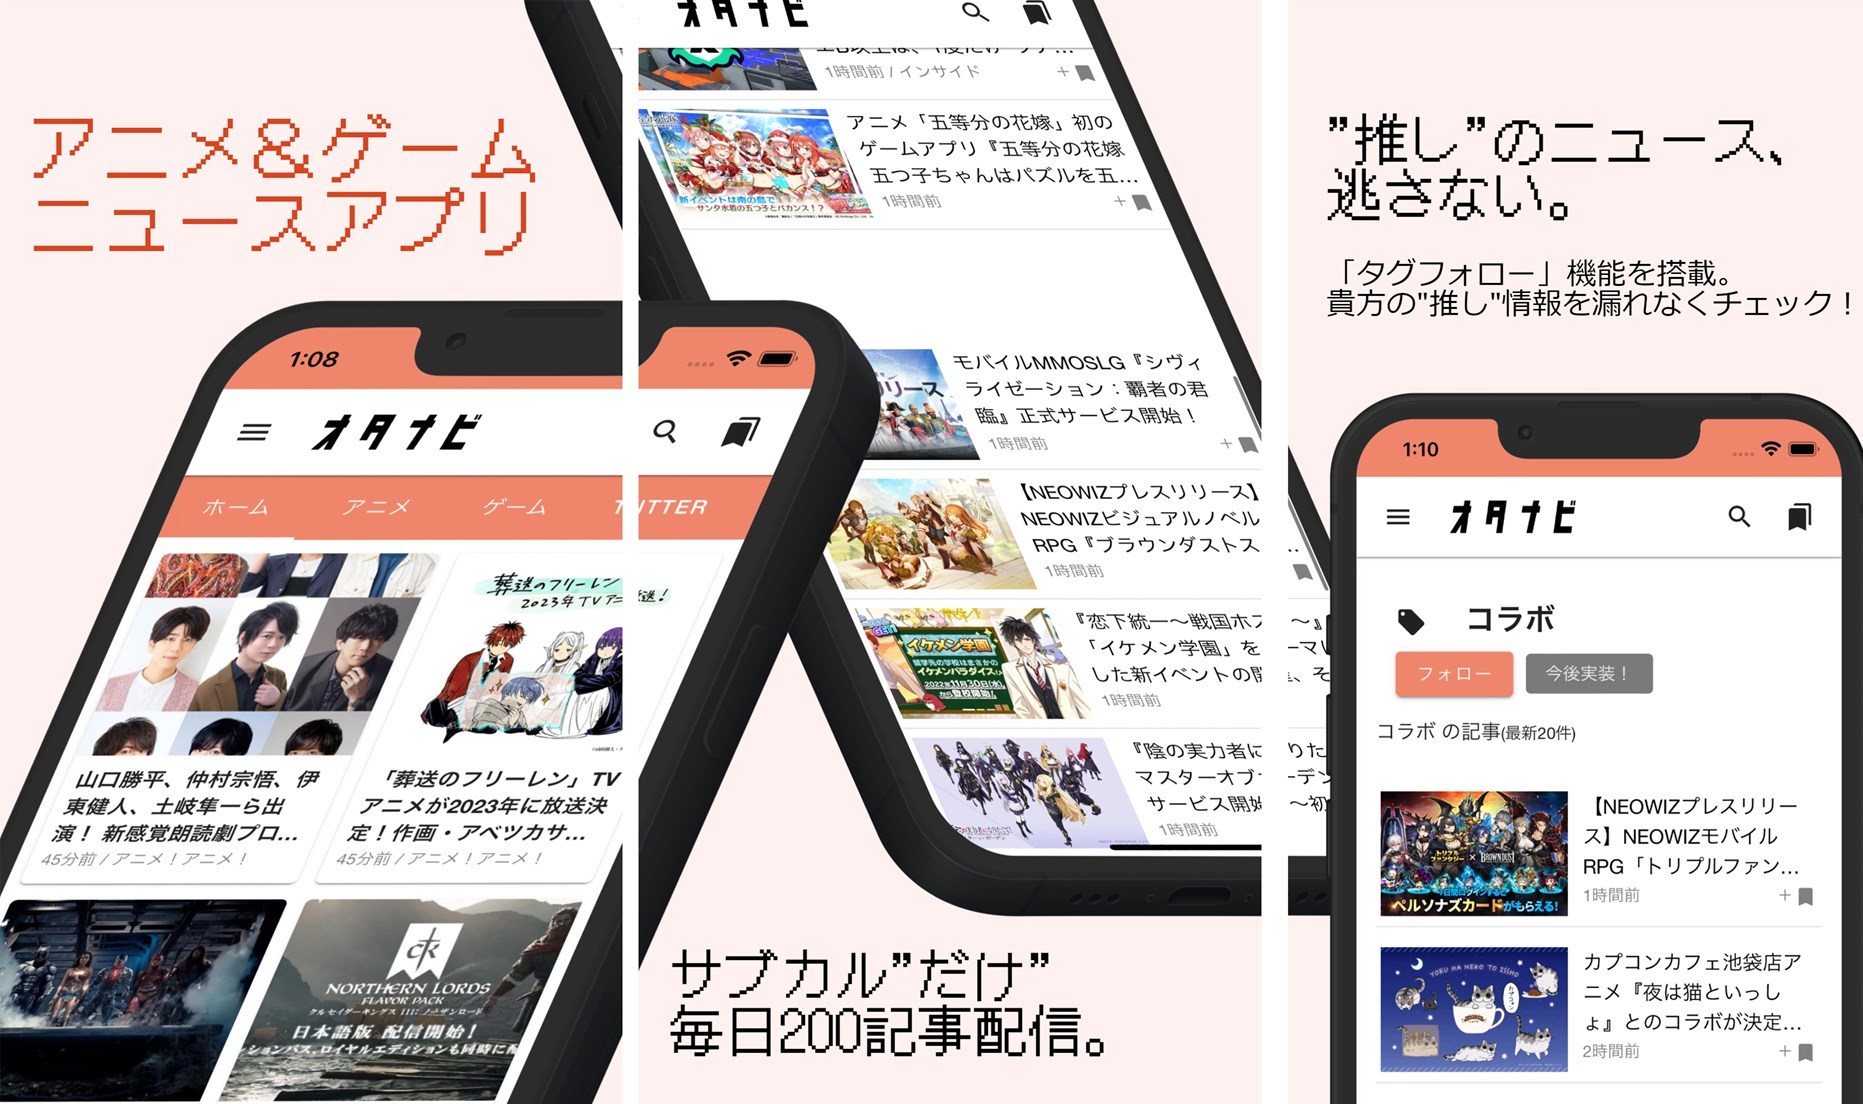 東京海上日動がJR東日本のメタバース空間「Virtual AKIBA World」に出展